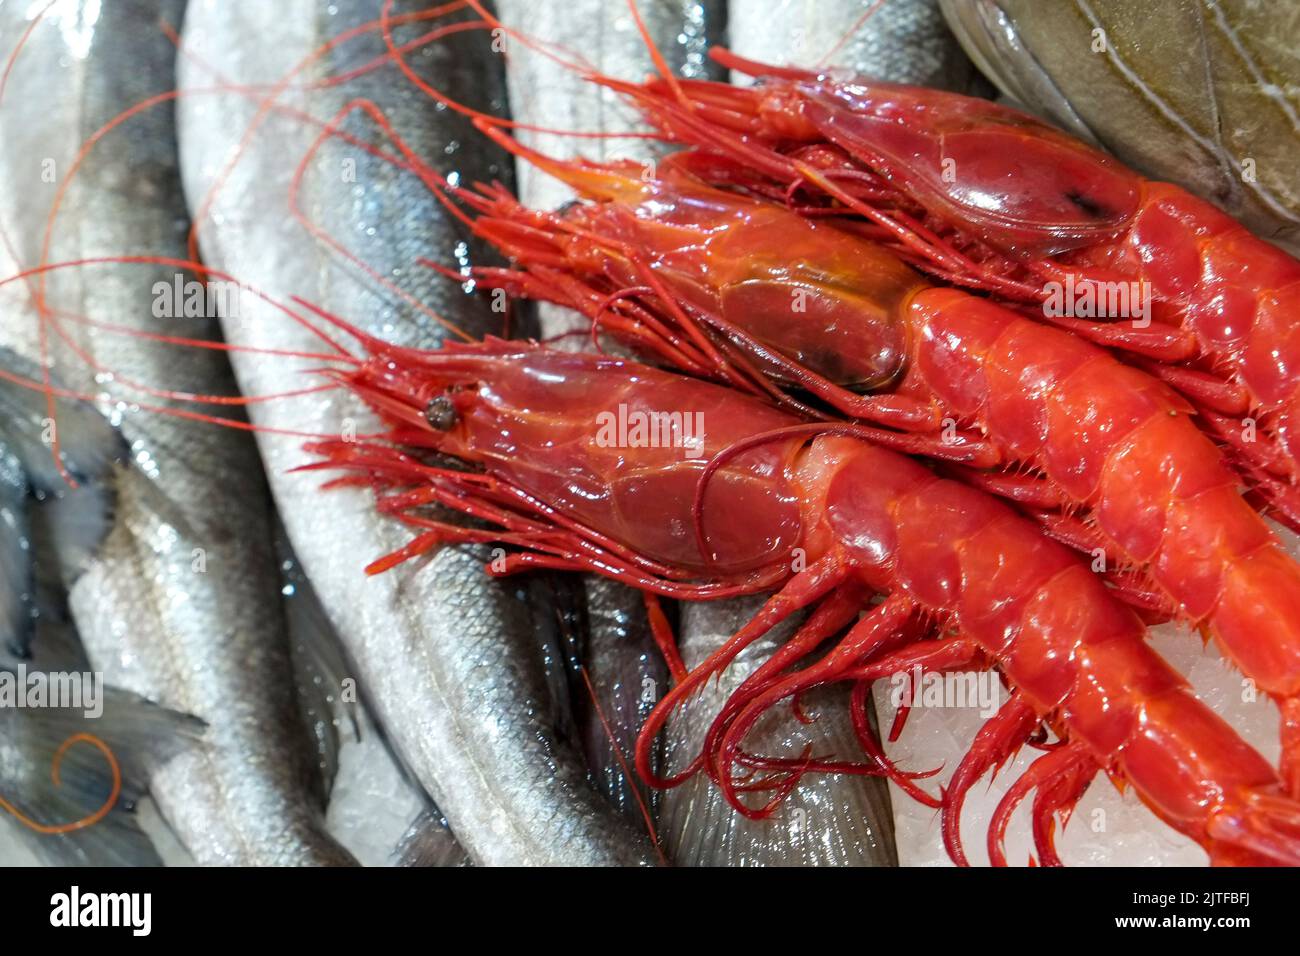 Portugal, Lisbonne, fruits de mer sur le marché agricole local Banque D'Images